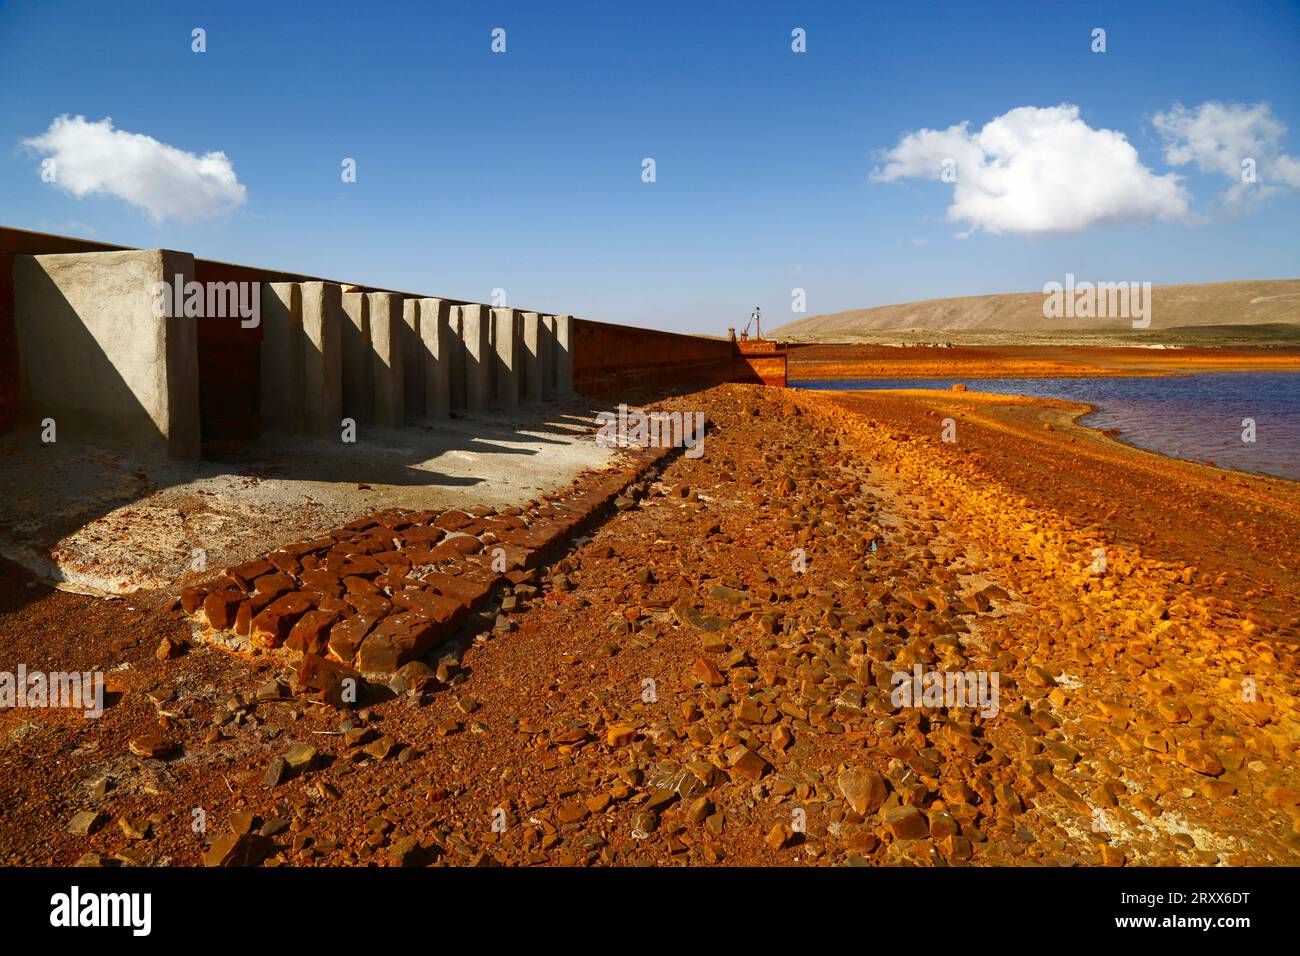 Réservoir de Milluni, près d'El Alto, BOLIVIE ; 27 septembre 2023 : une vue montrant des niveaux d'eau très bas dans le réservoir de Milluni, qui alimente la ville voisine d'El Alto et ne représente actuellement que 20% de sa capacité. Les sorties de déversoir sont sur la gauche. Les régions altiplano boliviennes connaissent actuellement une grave sécheresse et les niveaux d'eau des lacs, rivières et réservoirs sont inférieurs à la normale pour la période de l'année. Beaucoup blâment le changement climatique ; les dernières années ont été plus sèches que la normale et le phénomène El Niño se renforce actuellement dans l’océan Pacifique au large de l’Amérique du Sud. Crédit : Banque D'Images